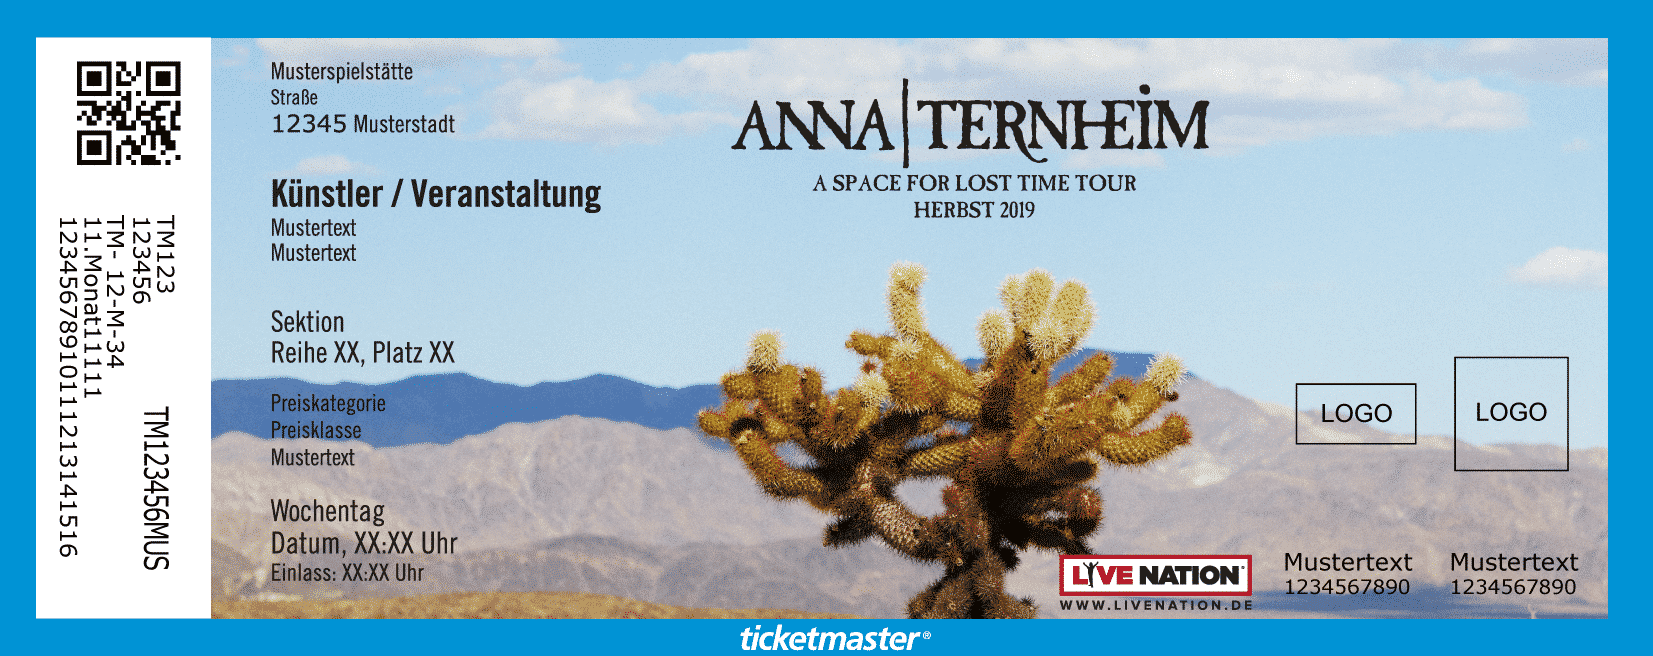 Anna Ternheim Konzerte 2019